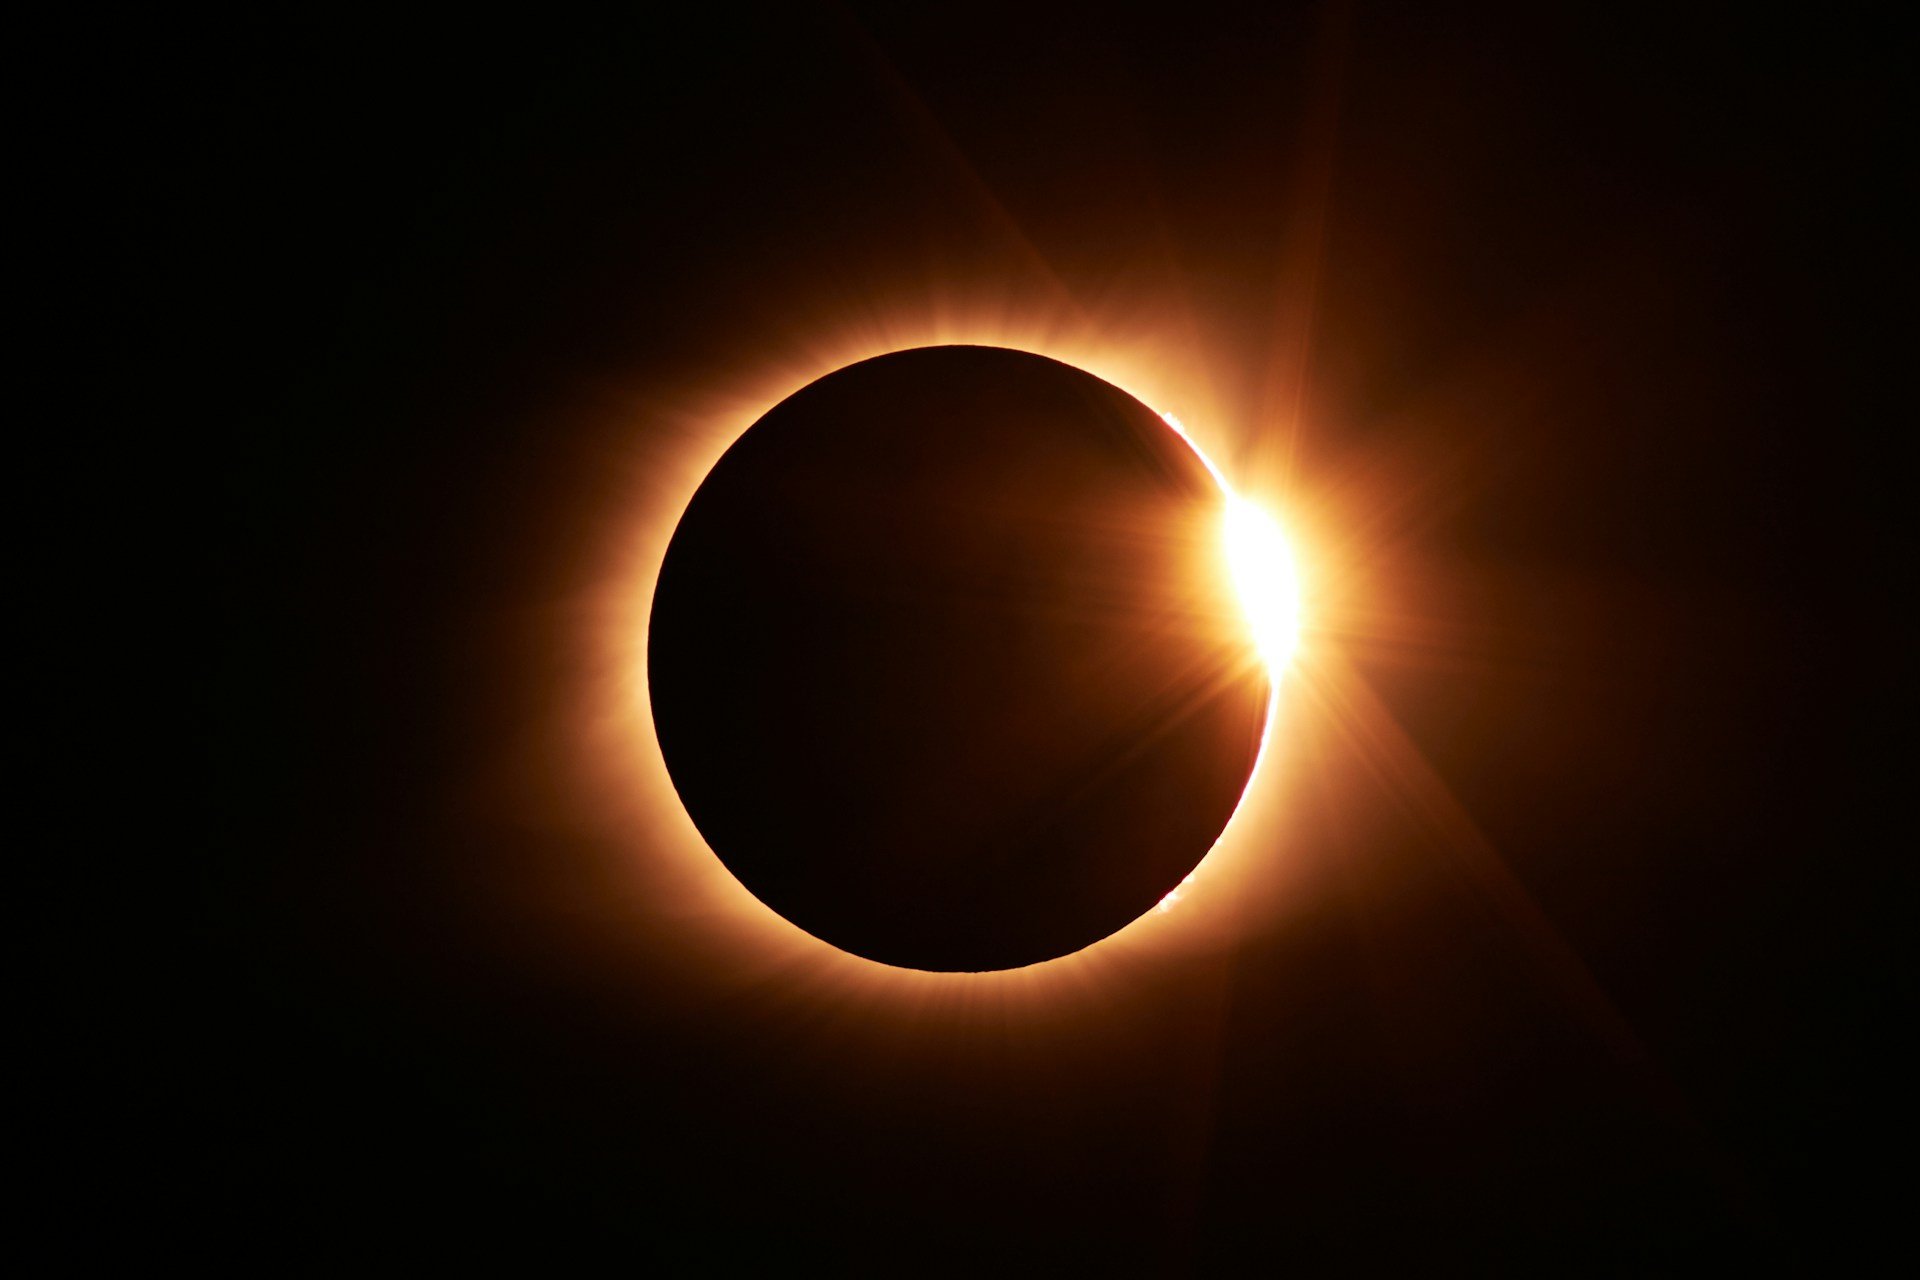 Especialistas falam sobre sinais bíblicos do eclipse solar: “É um momento profético”